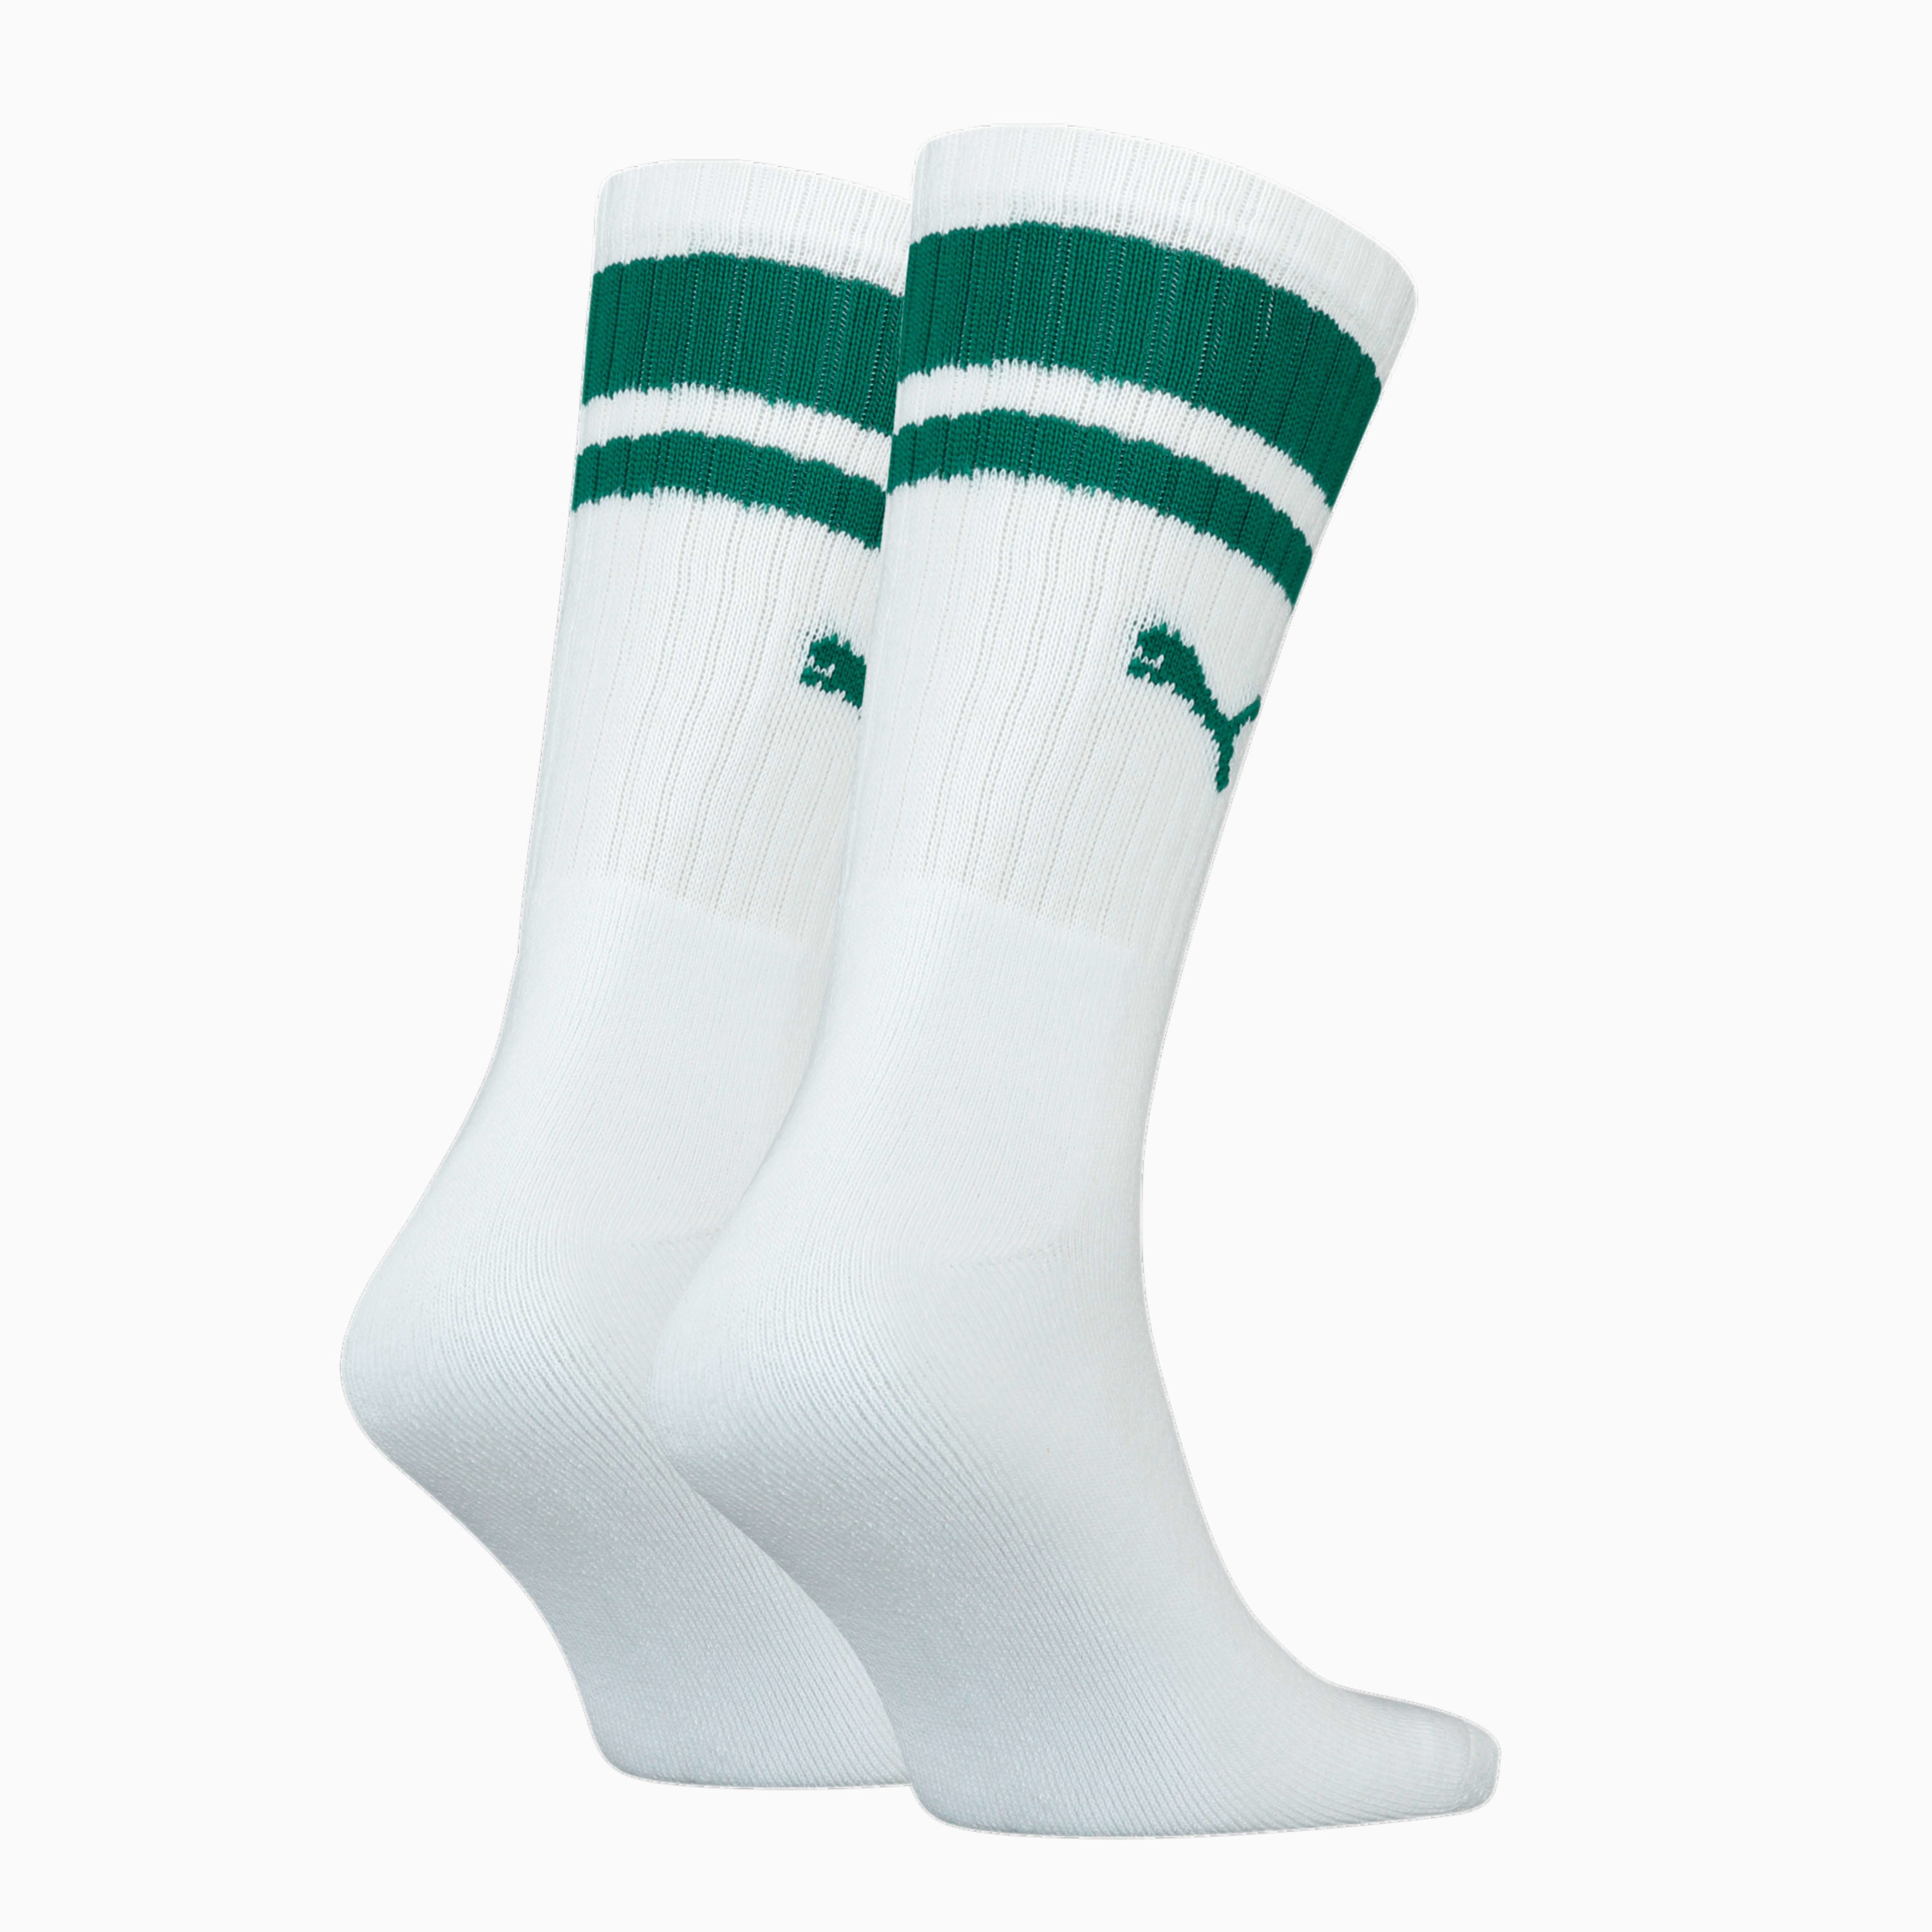 Set von 2 Paar Socken traditionellen Sneaker grünen Streifen mit